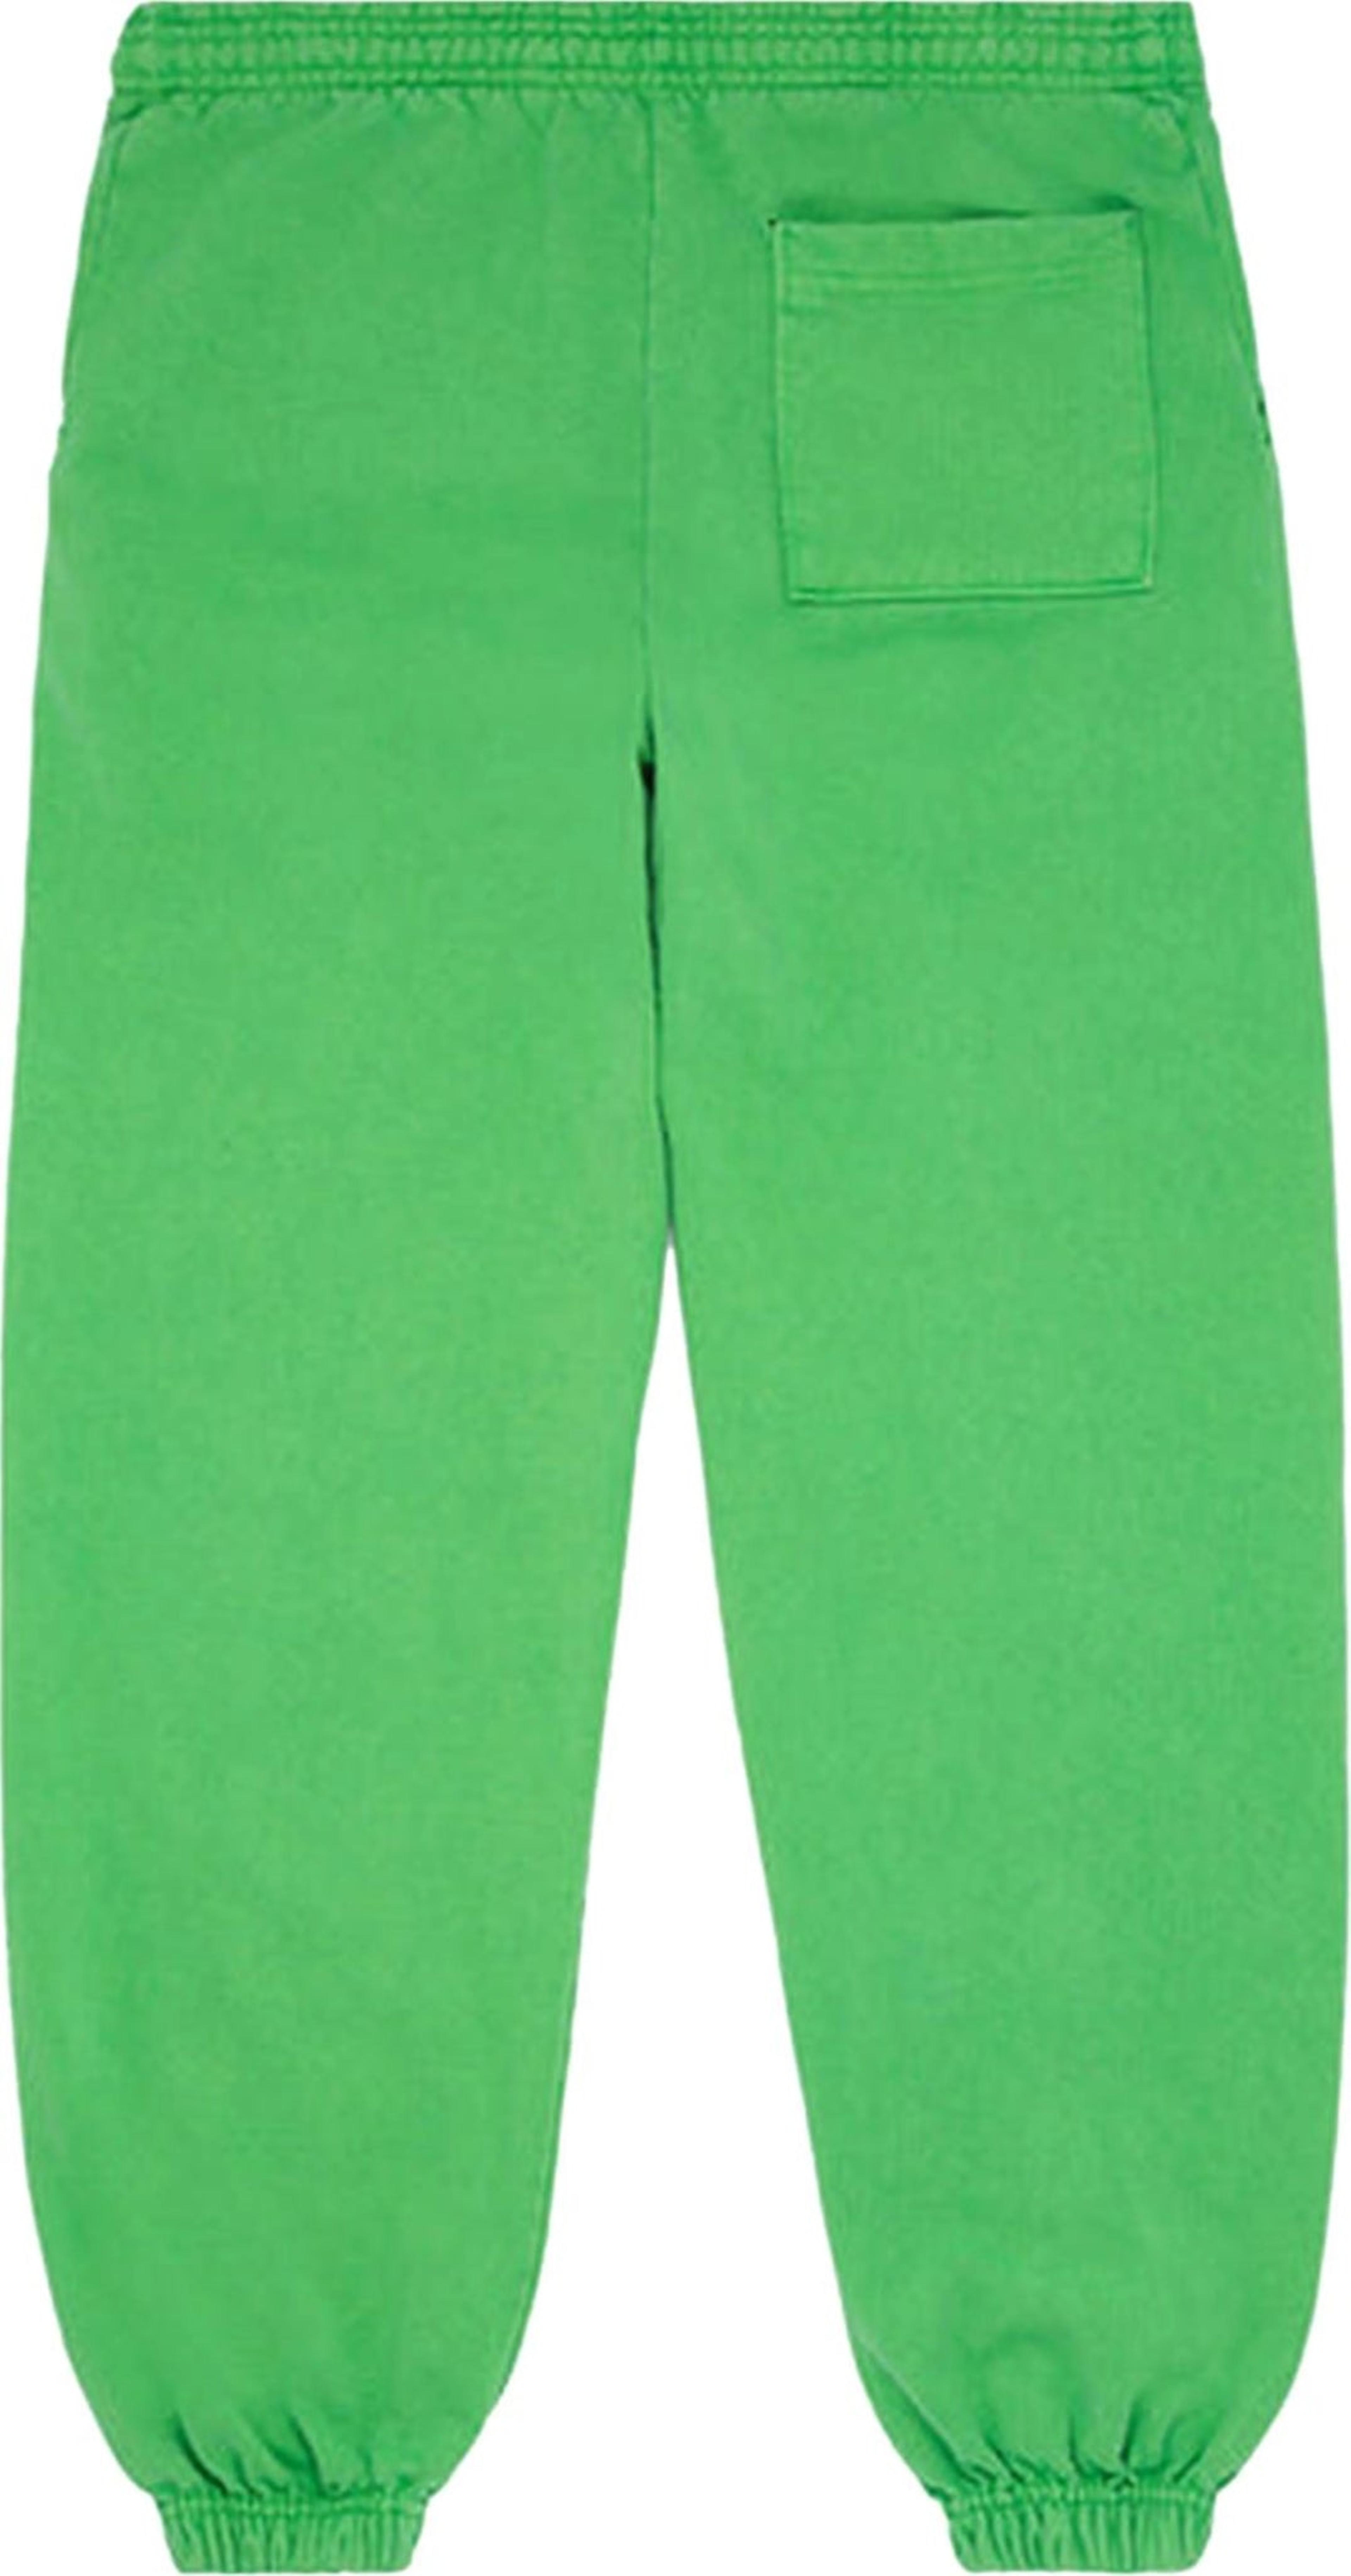 Alternate View 1 of Sp5der Websuit Sweatpant Slime Green